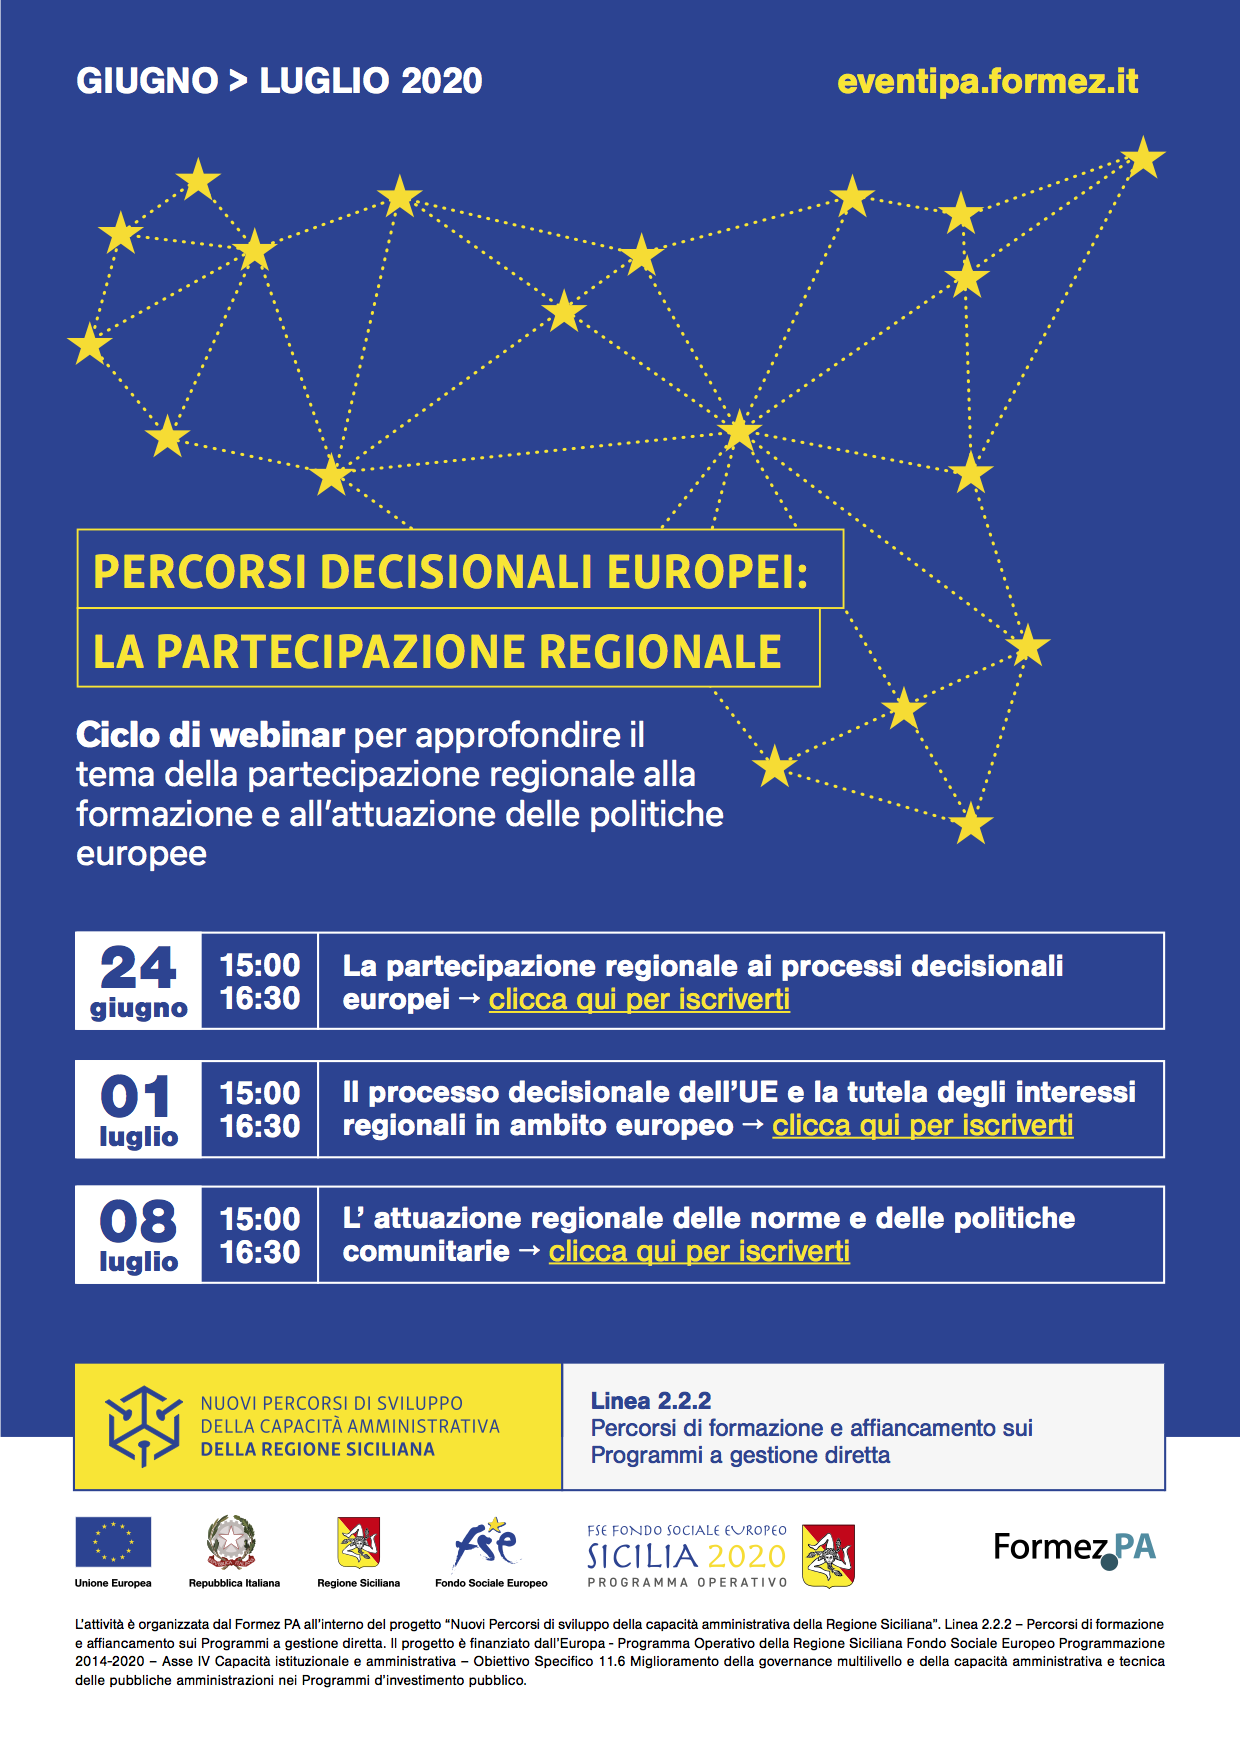 Il processo decisionale dell’UE e la tutela degli interessi regionali in ambito europeo, webinar 1 luglio